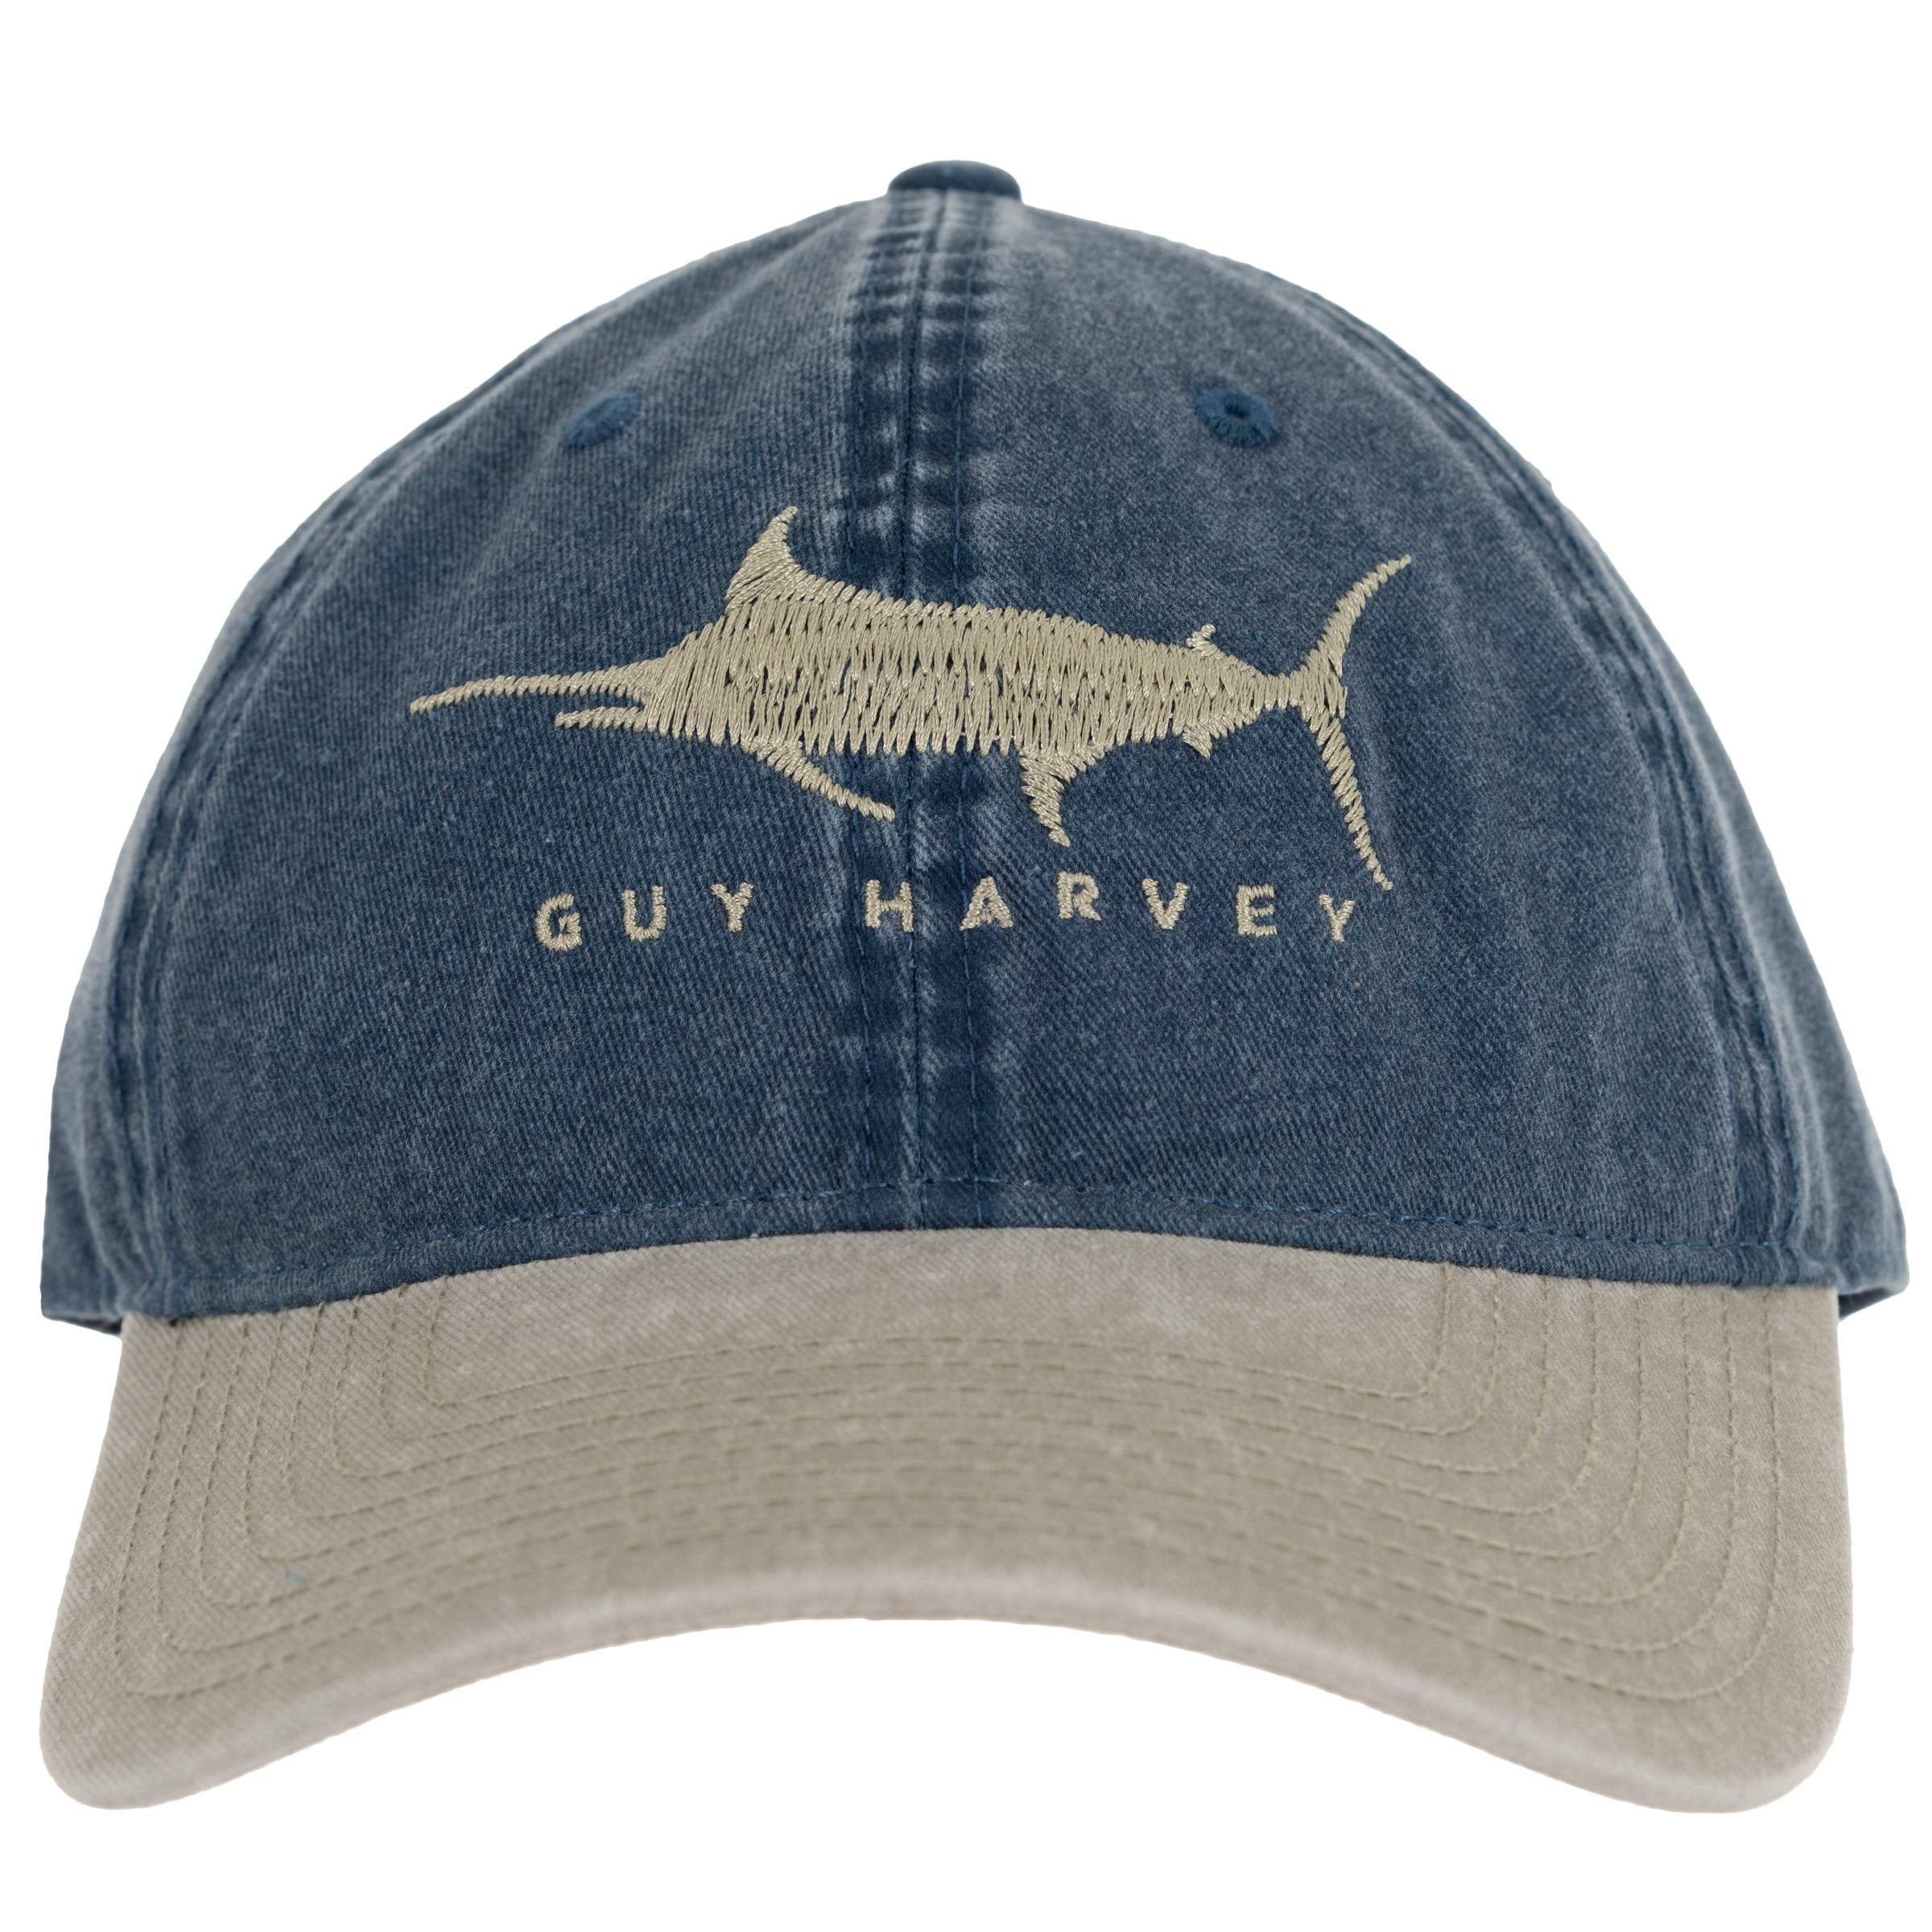 Guy Harvey Marlin Patch Mesh Trucker Hat 